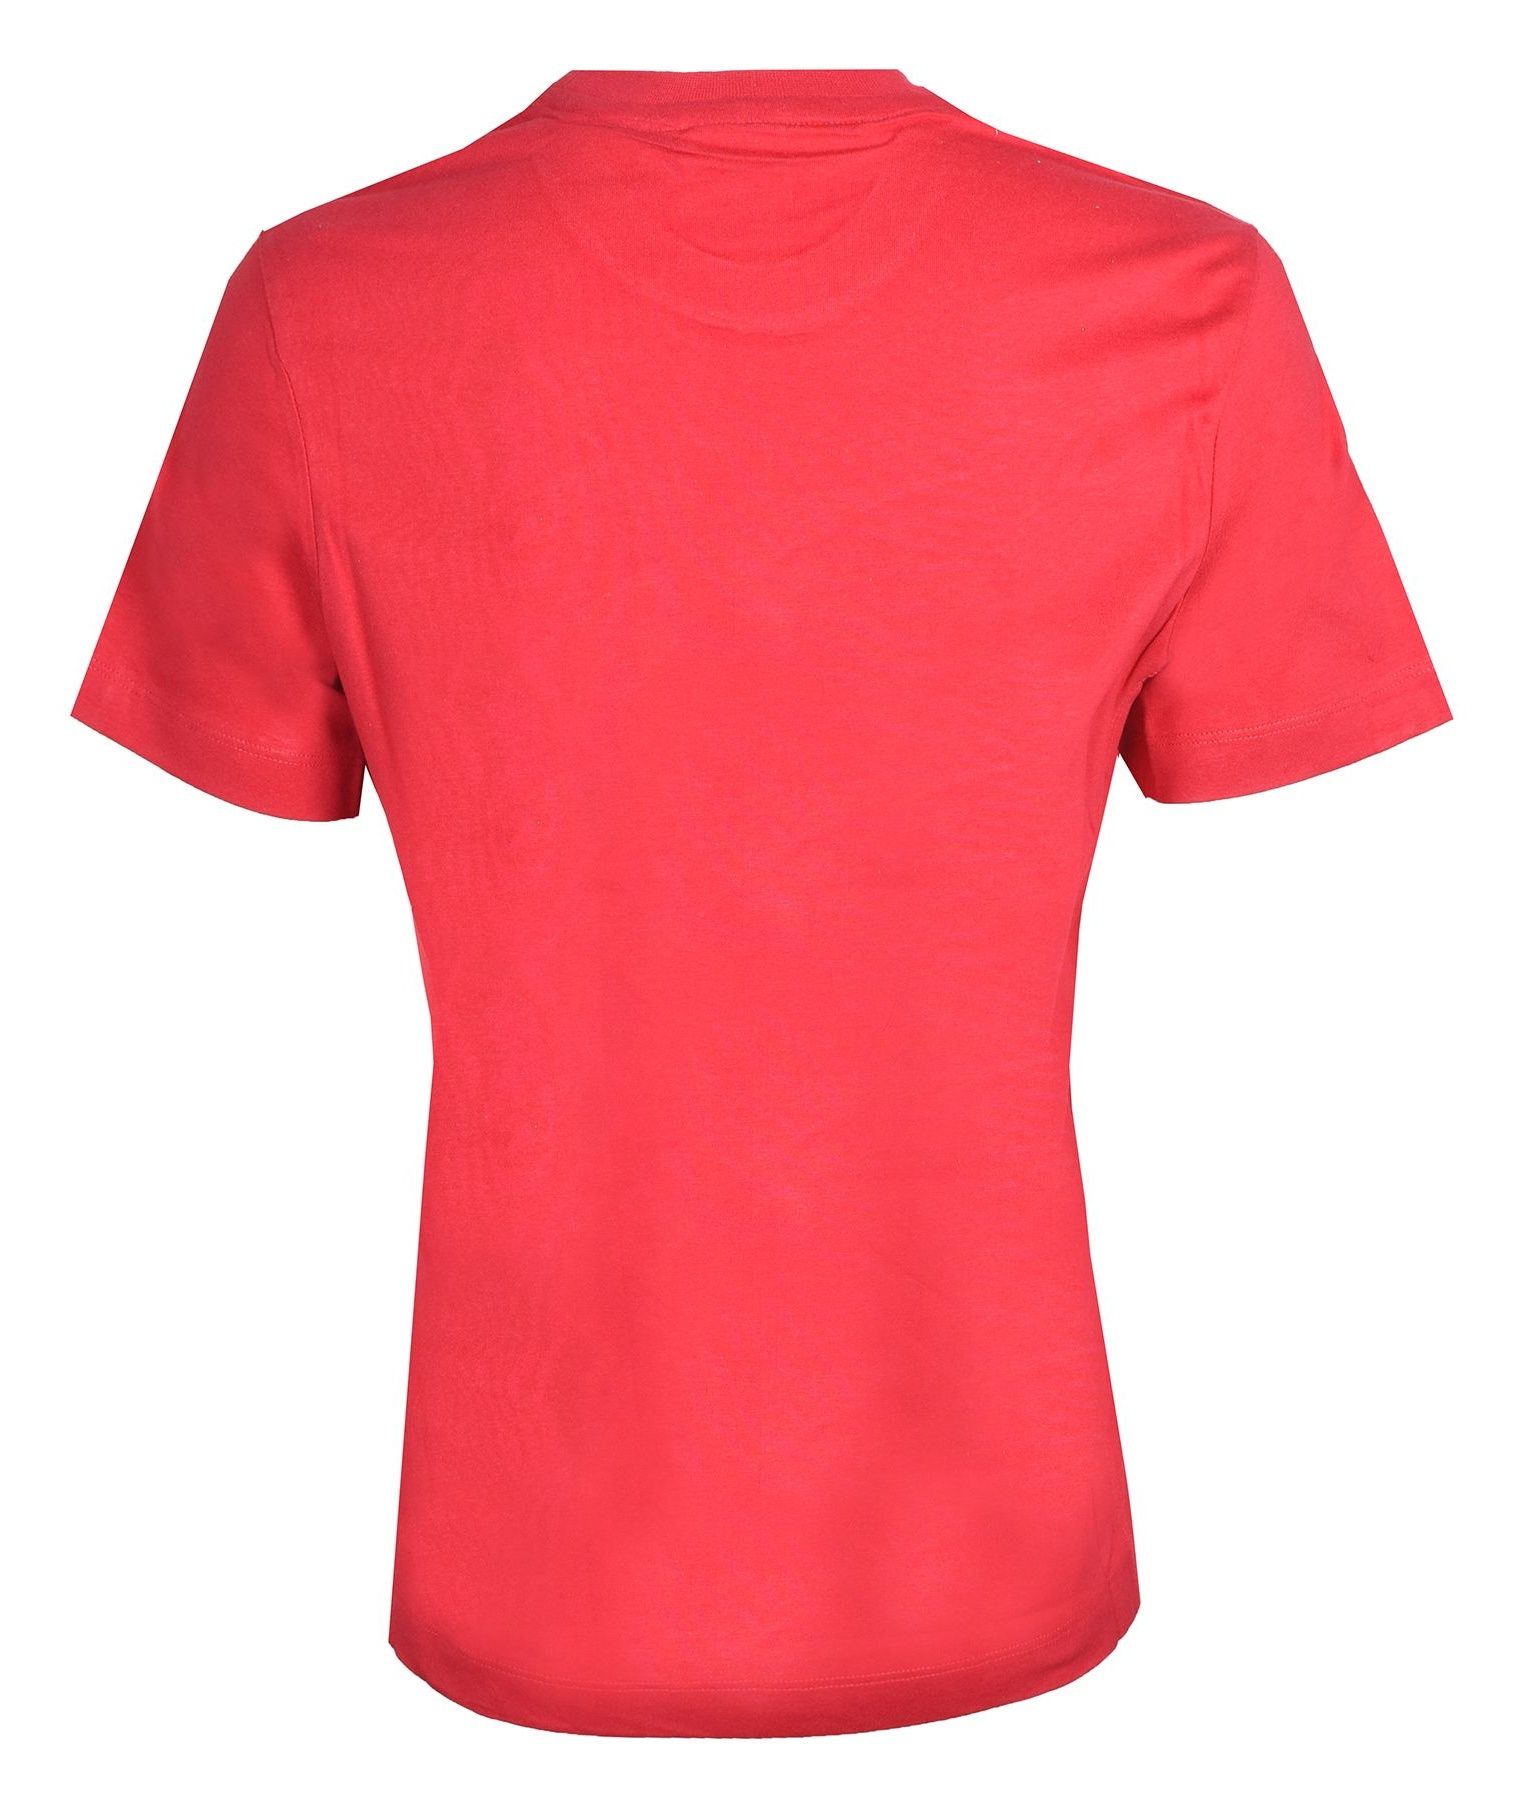  تی شرت ورزشی زنانه دیادورا کد 65432 -  - 4